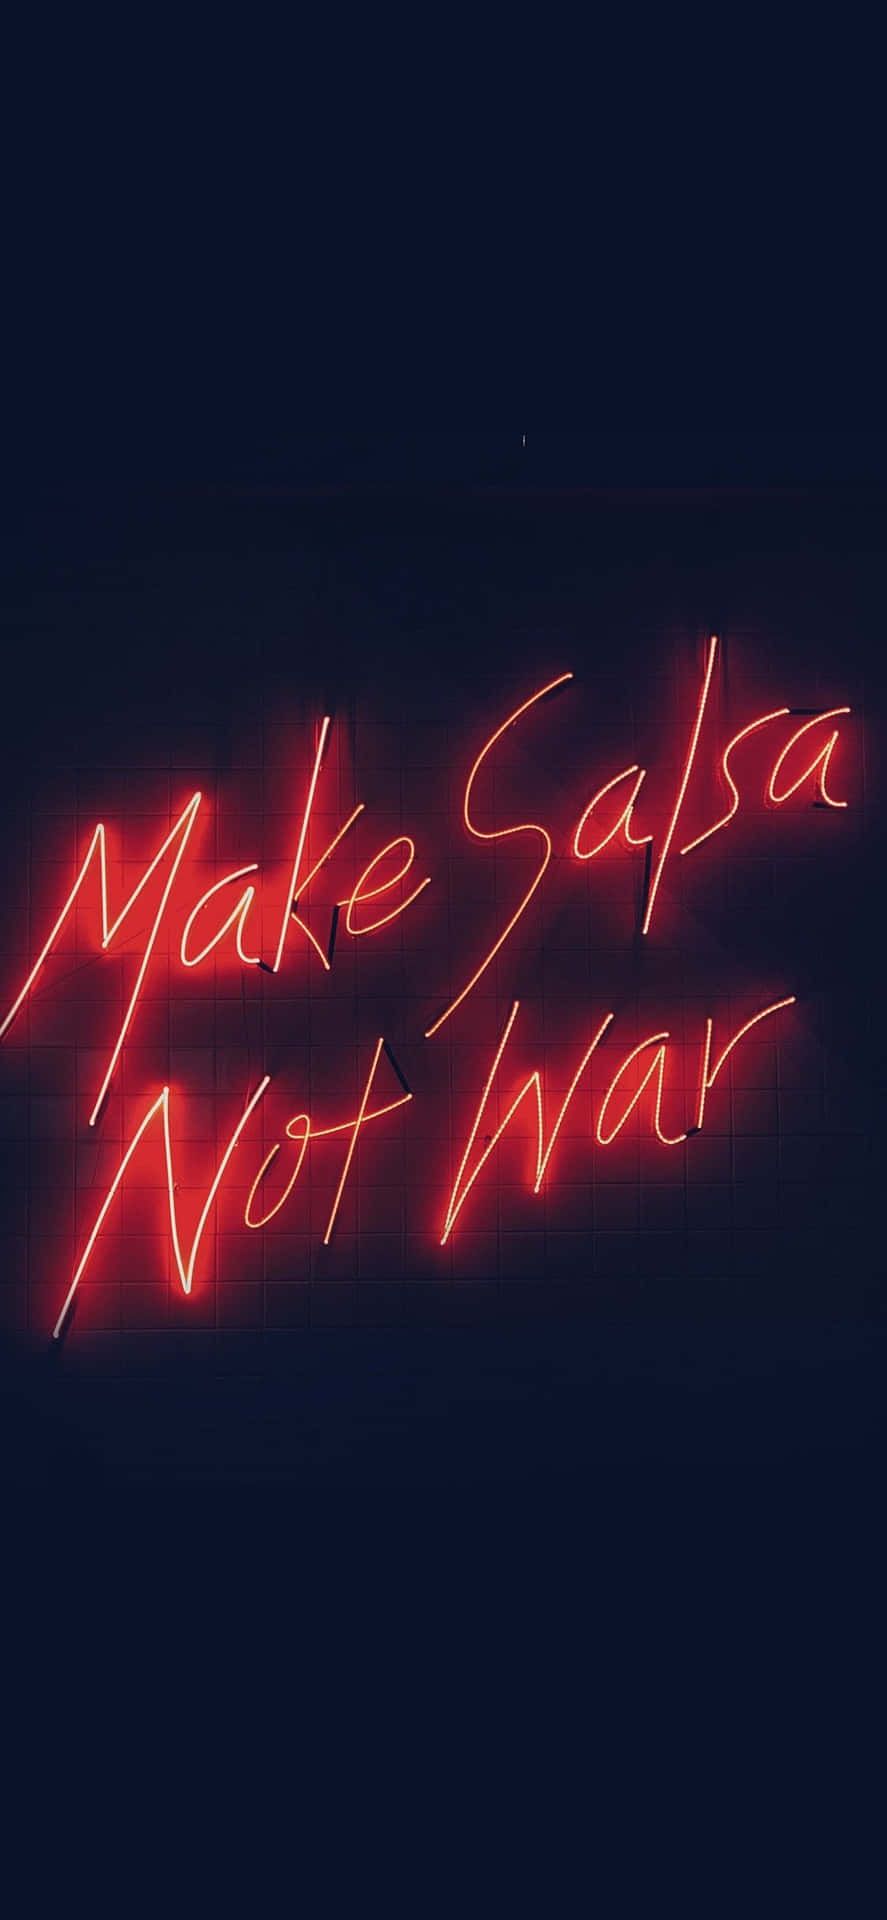 Make salsa not war - Neon red